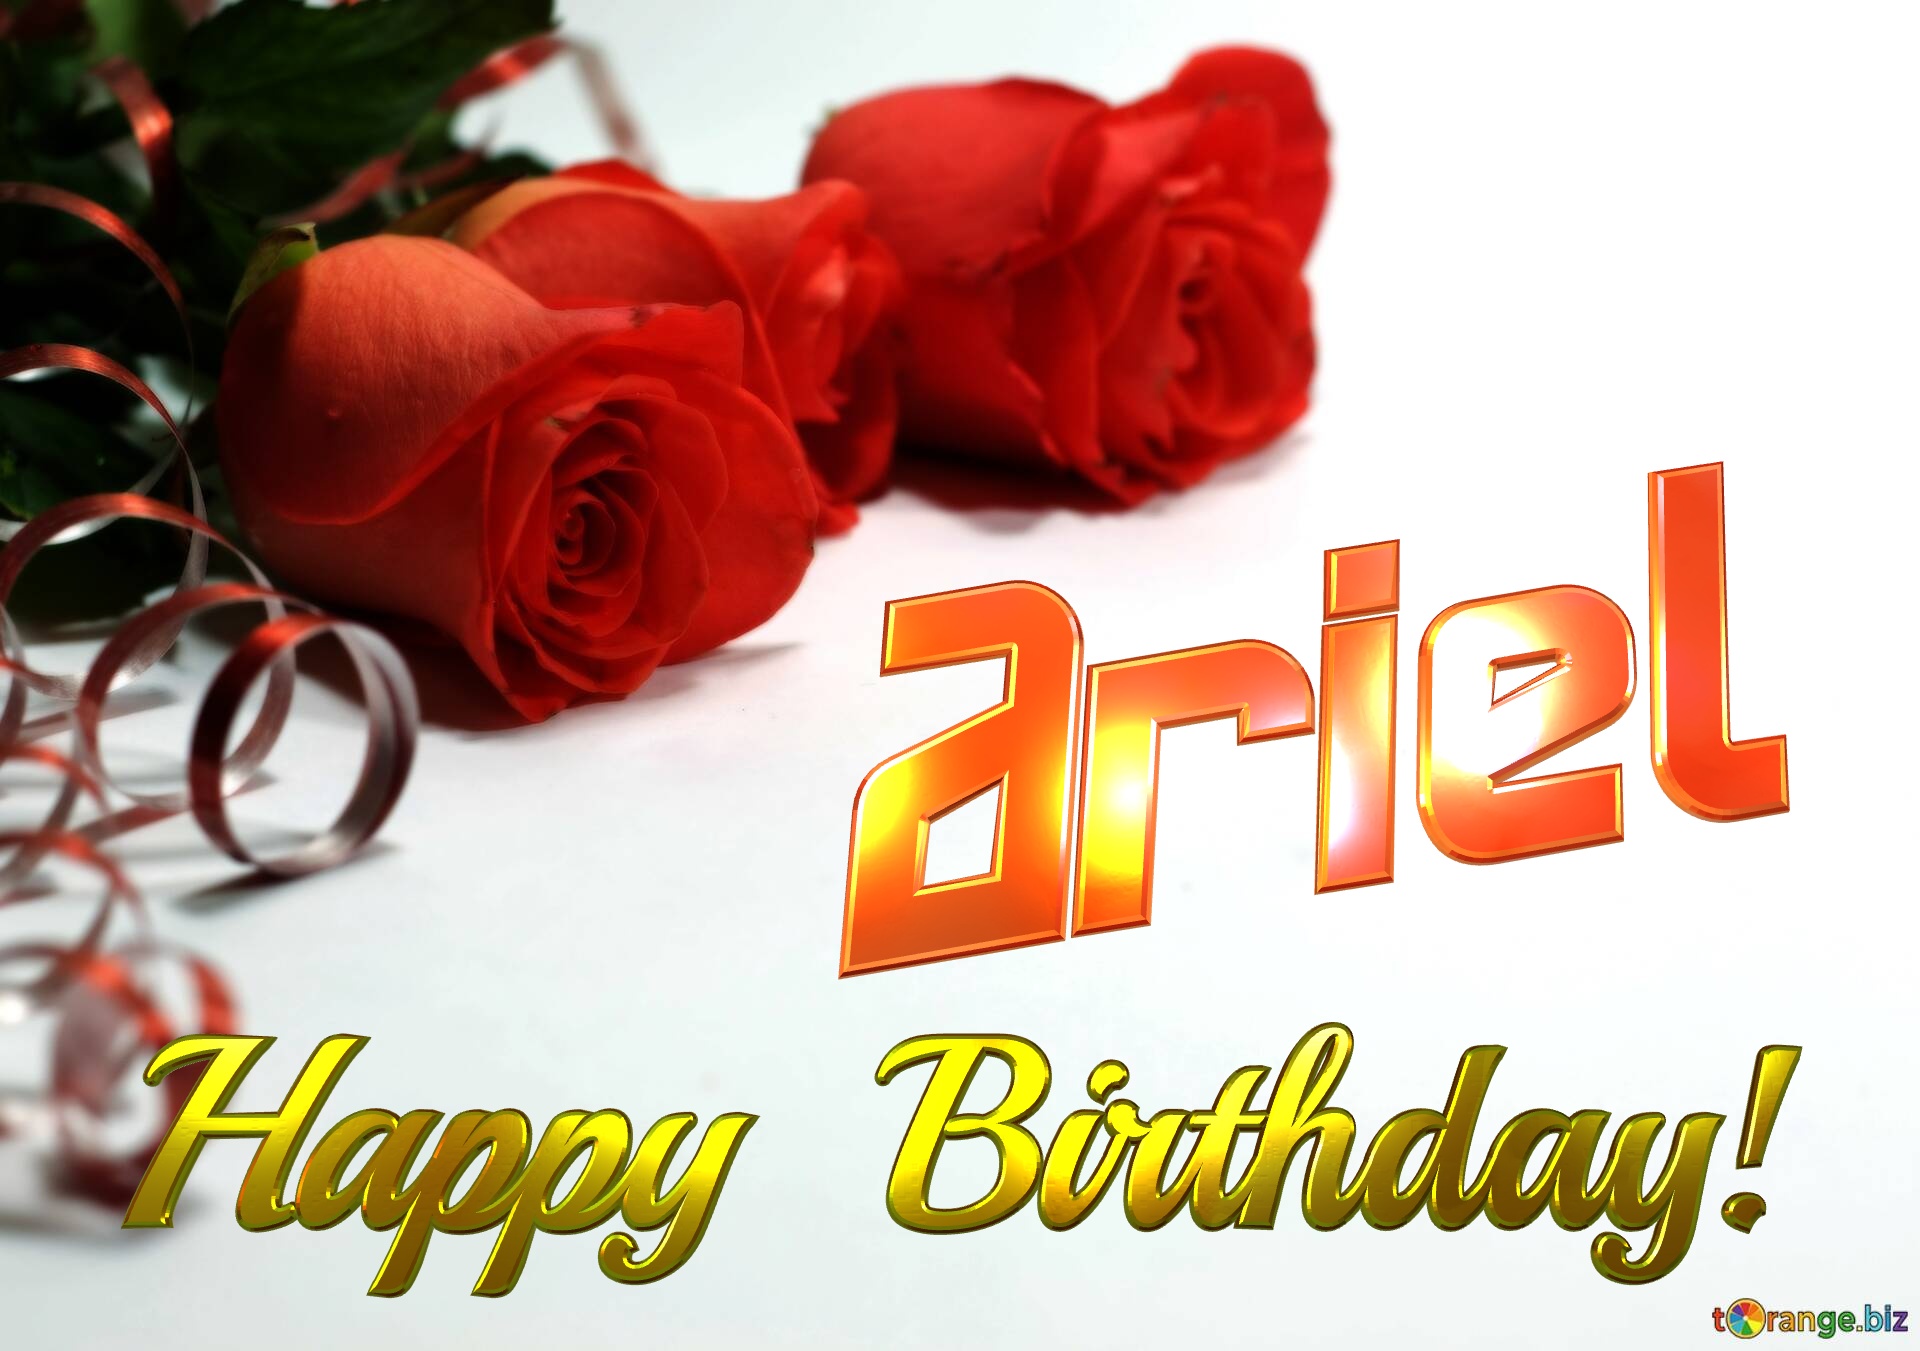 Ariel   Birthday   Wishes background №0